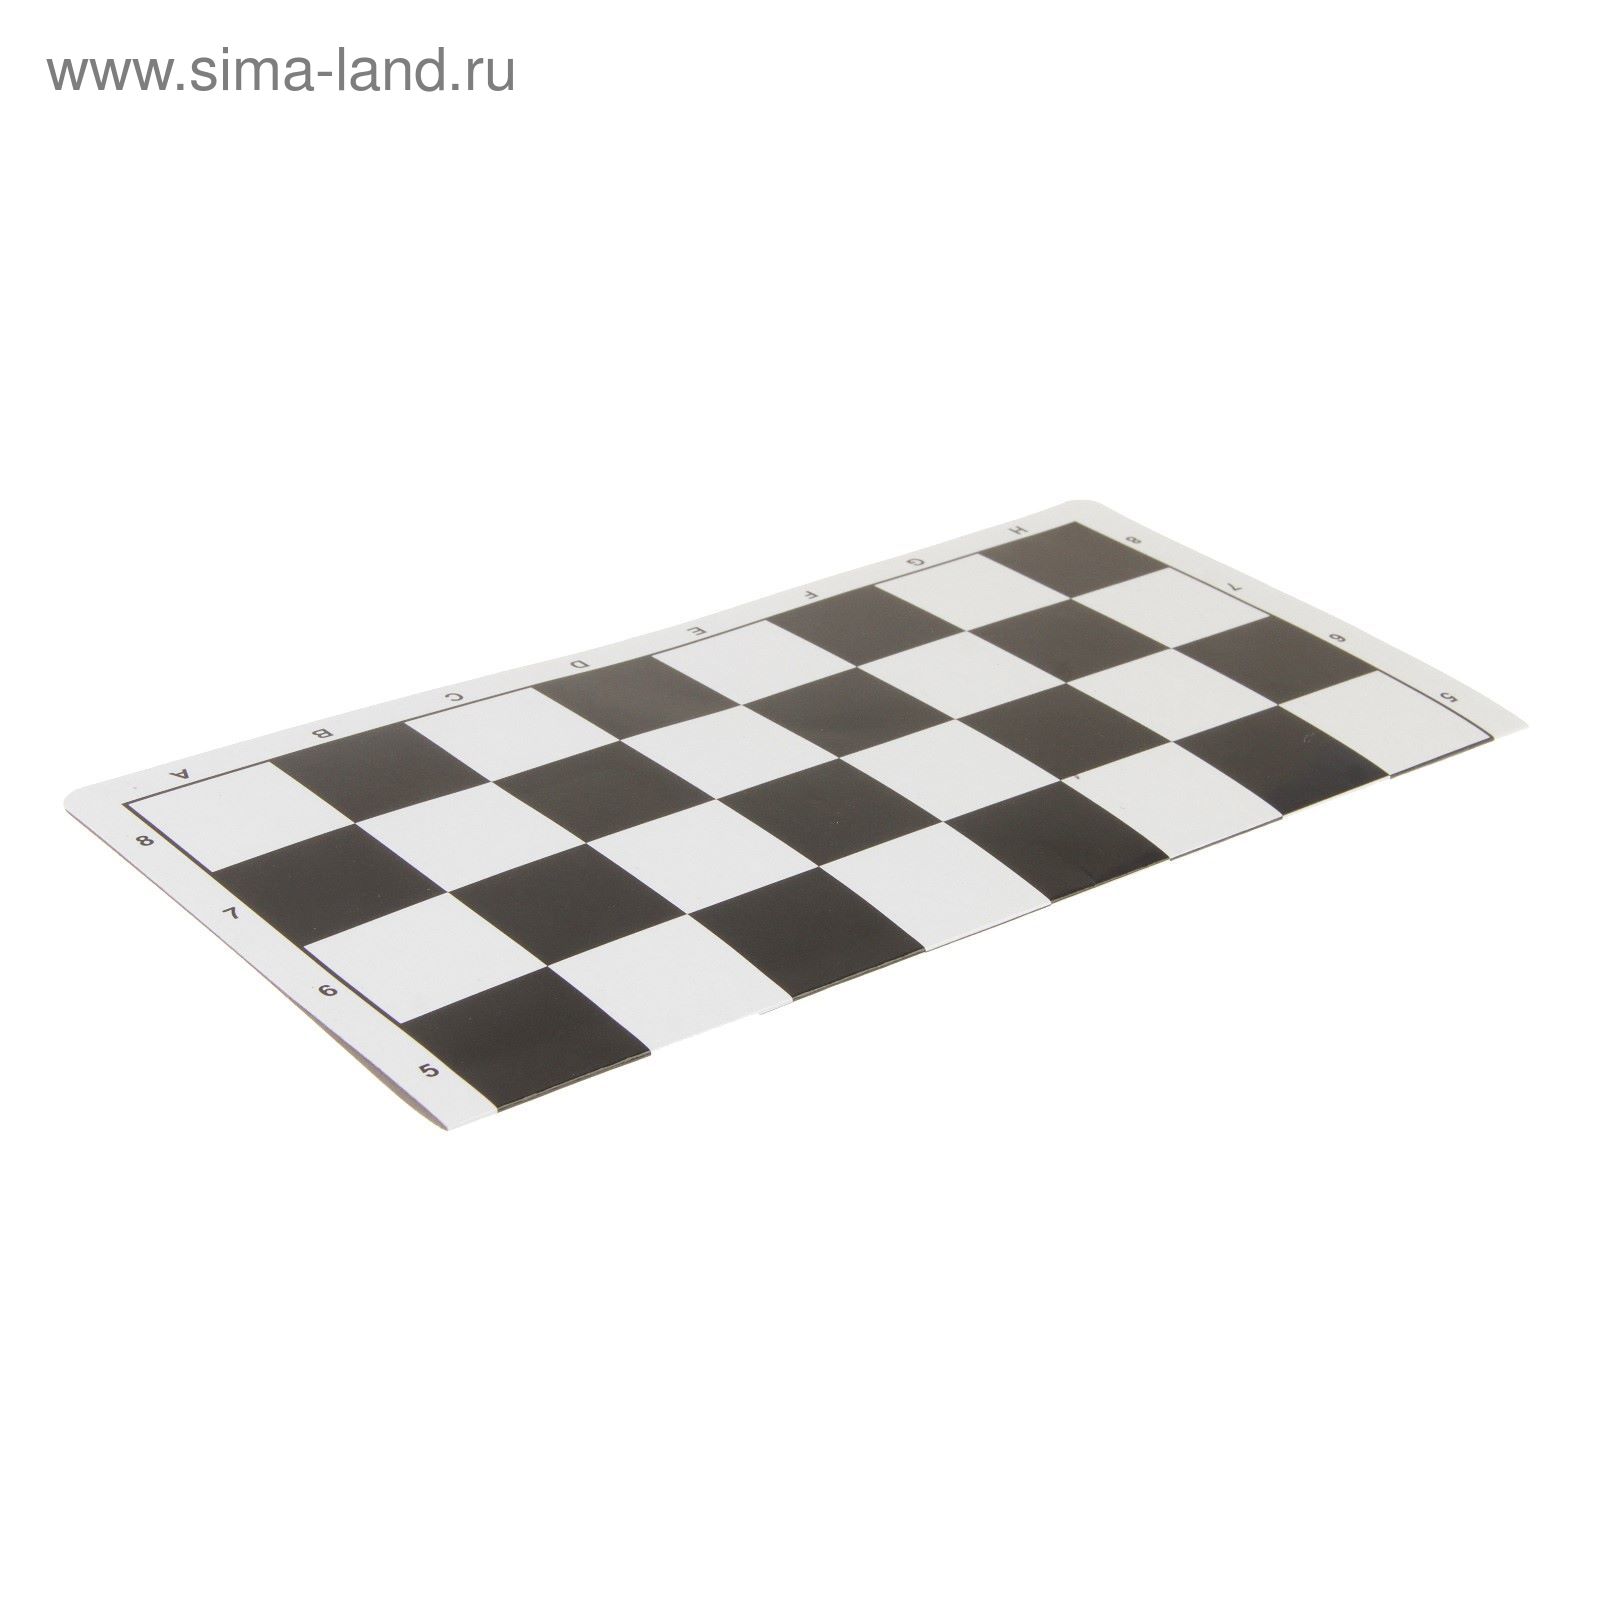 Доска шахматная складная, картонная, чёрно-белая